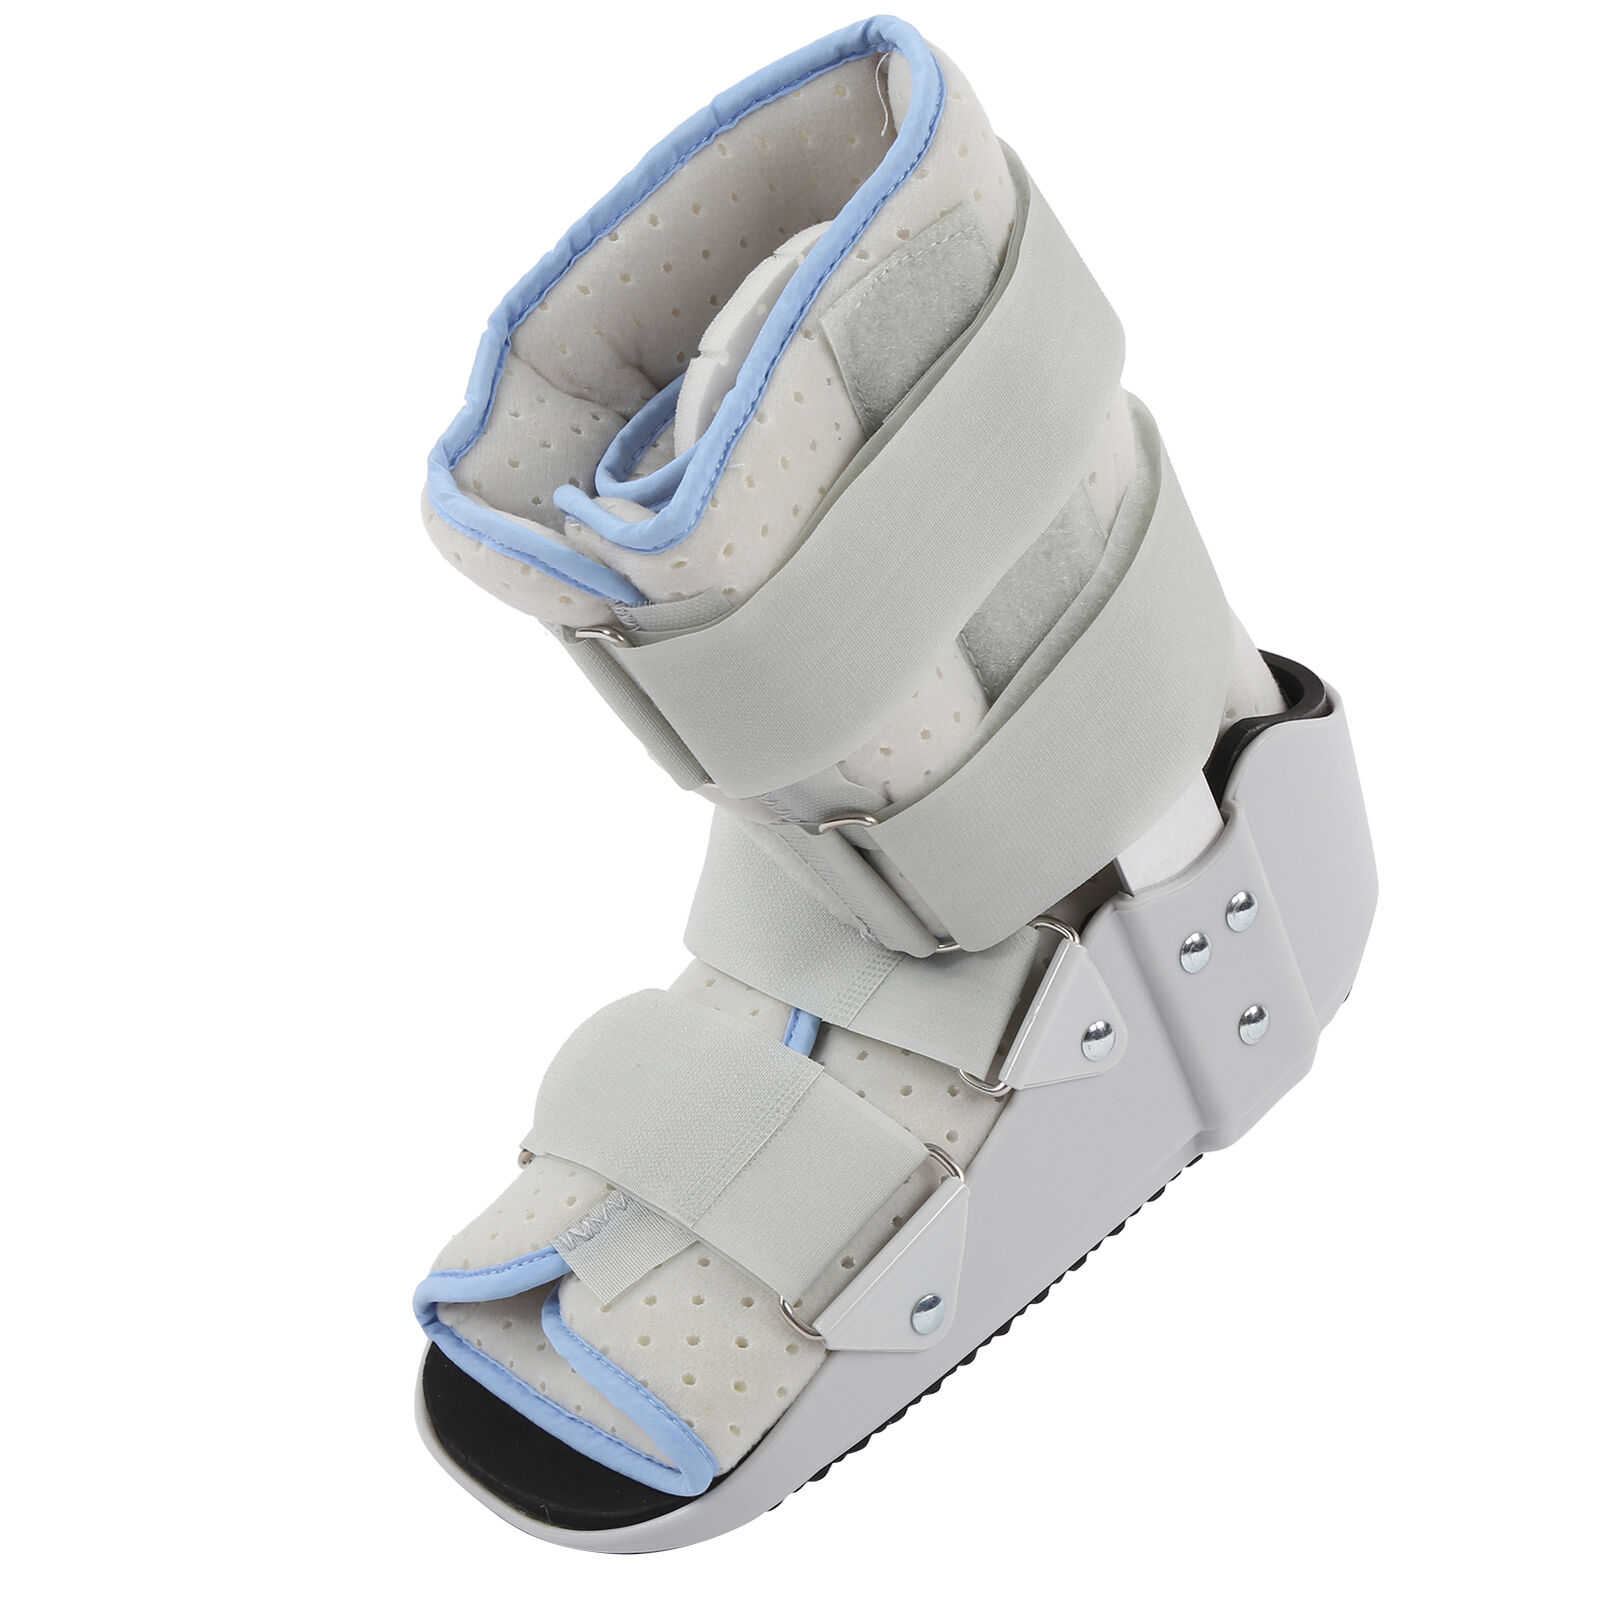 Walking Shoes Adjustable Achilles Tendon Breathable Boots Ankle Fixation Braces